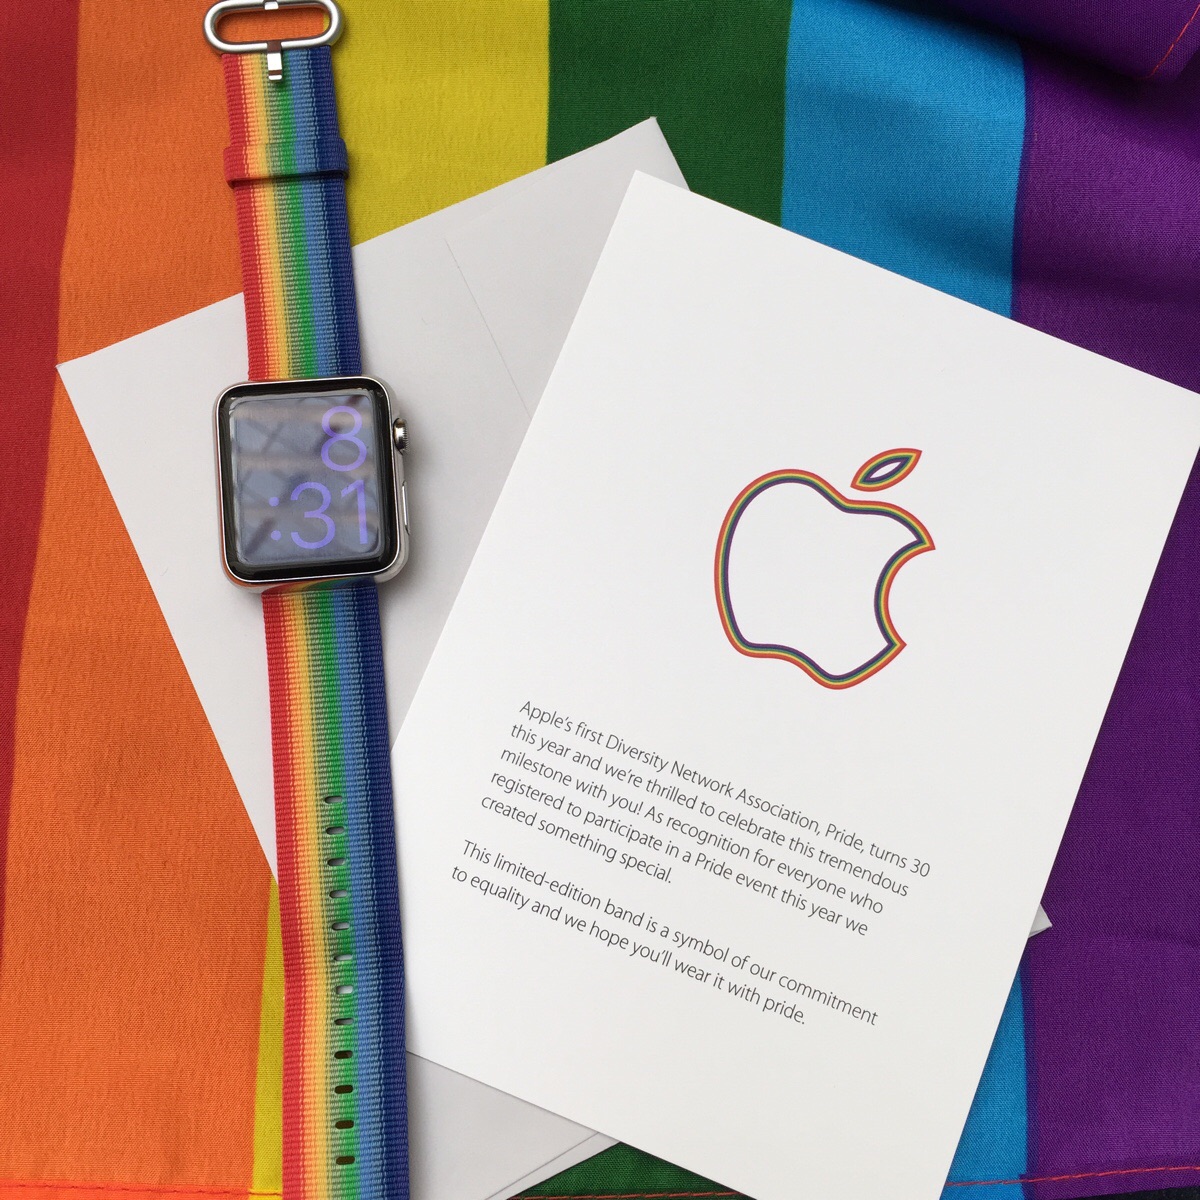 Apple создала специальную версию Apple Watch к Pride Parade 2016